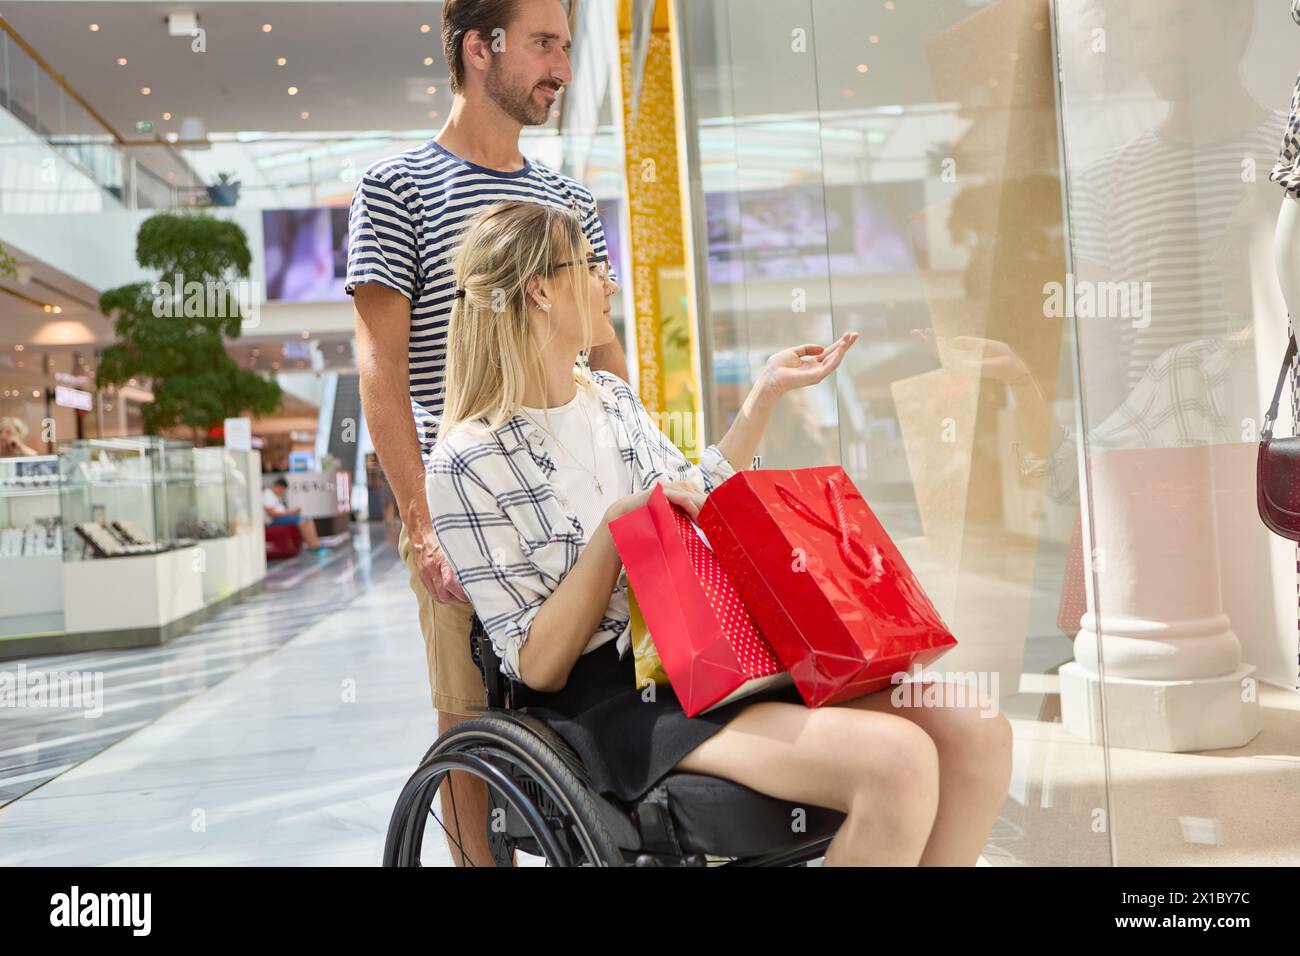 Eine Frau, die einen Rollstuhl benutzt, genießt einen Einkaufstag in einem Einkaufszentrum mit einem männlichen Begleiter, beide bewundern eine Ladenpräsentation. Stockfoto